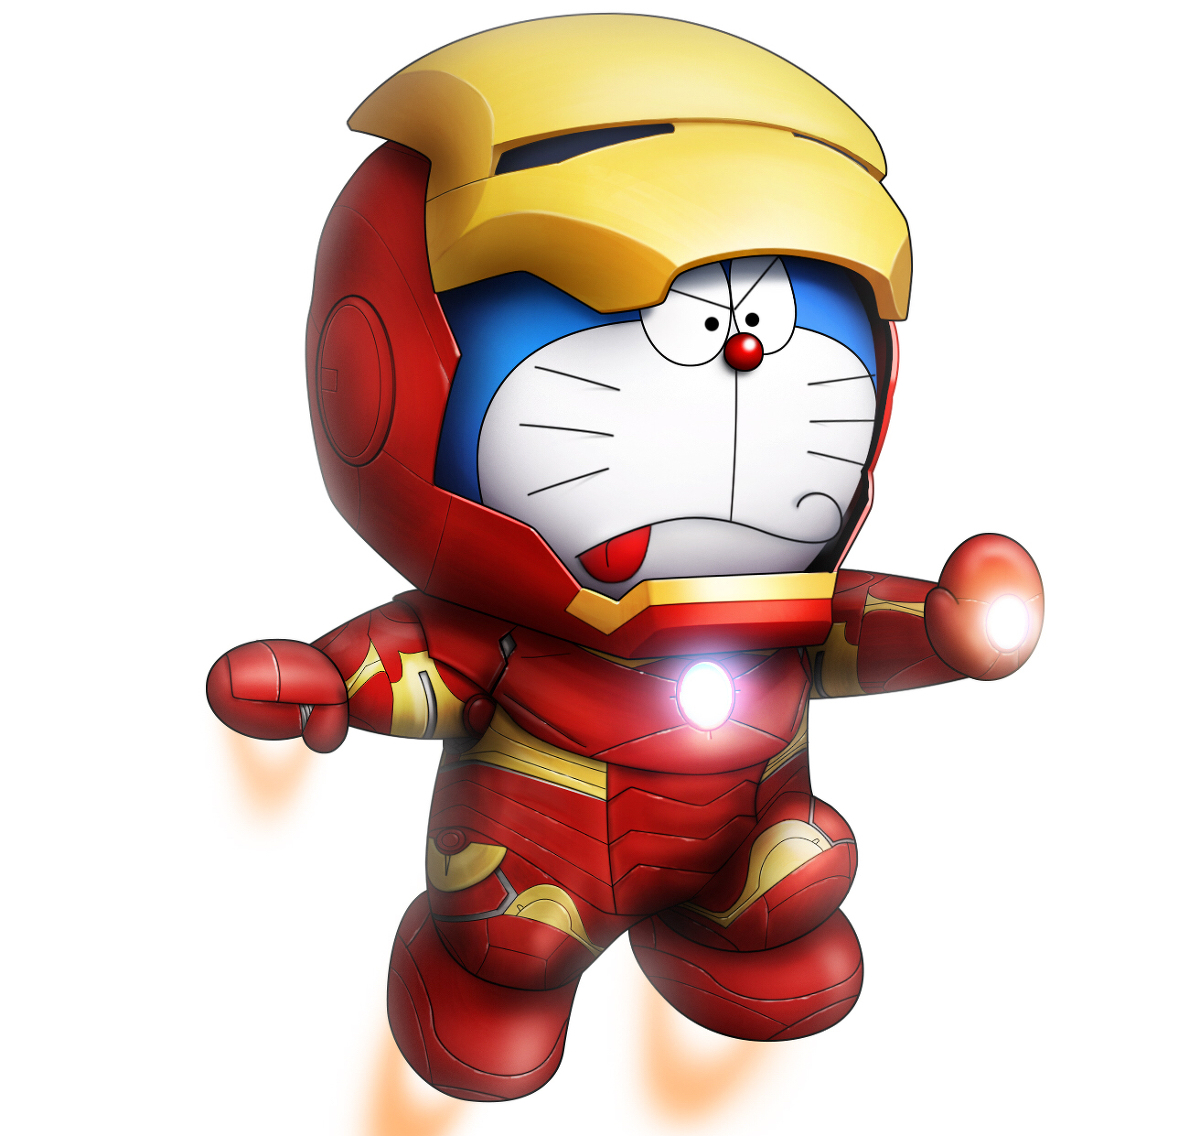 Mèo máy Doraemon là một nhân vật nổi tiếng không chỉ ở Nhật Bản mà còn trên toàn thế giới. Hãy xem hình ảnh đáng yêu của Doraemon để thưởng thức những chuyến phiêu lưu thú vị cùng cậu bé Nobita và đồng bọn!